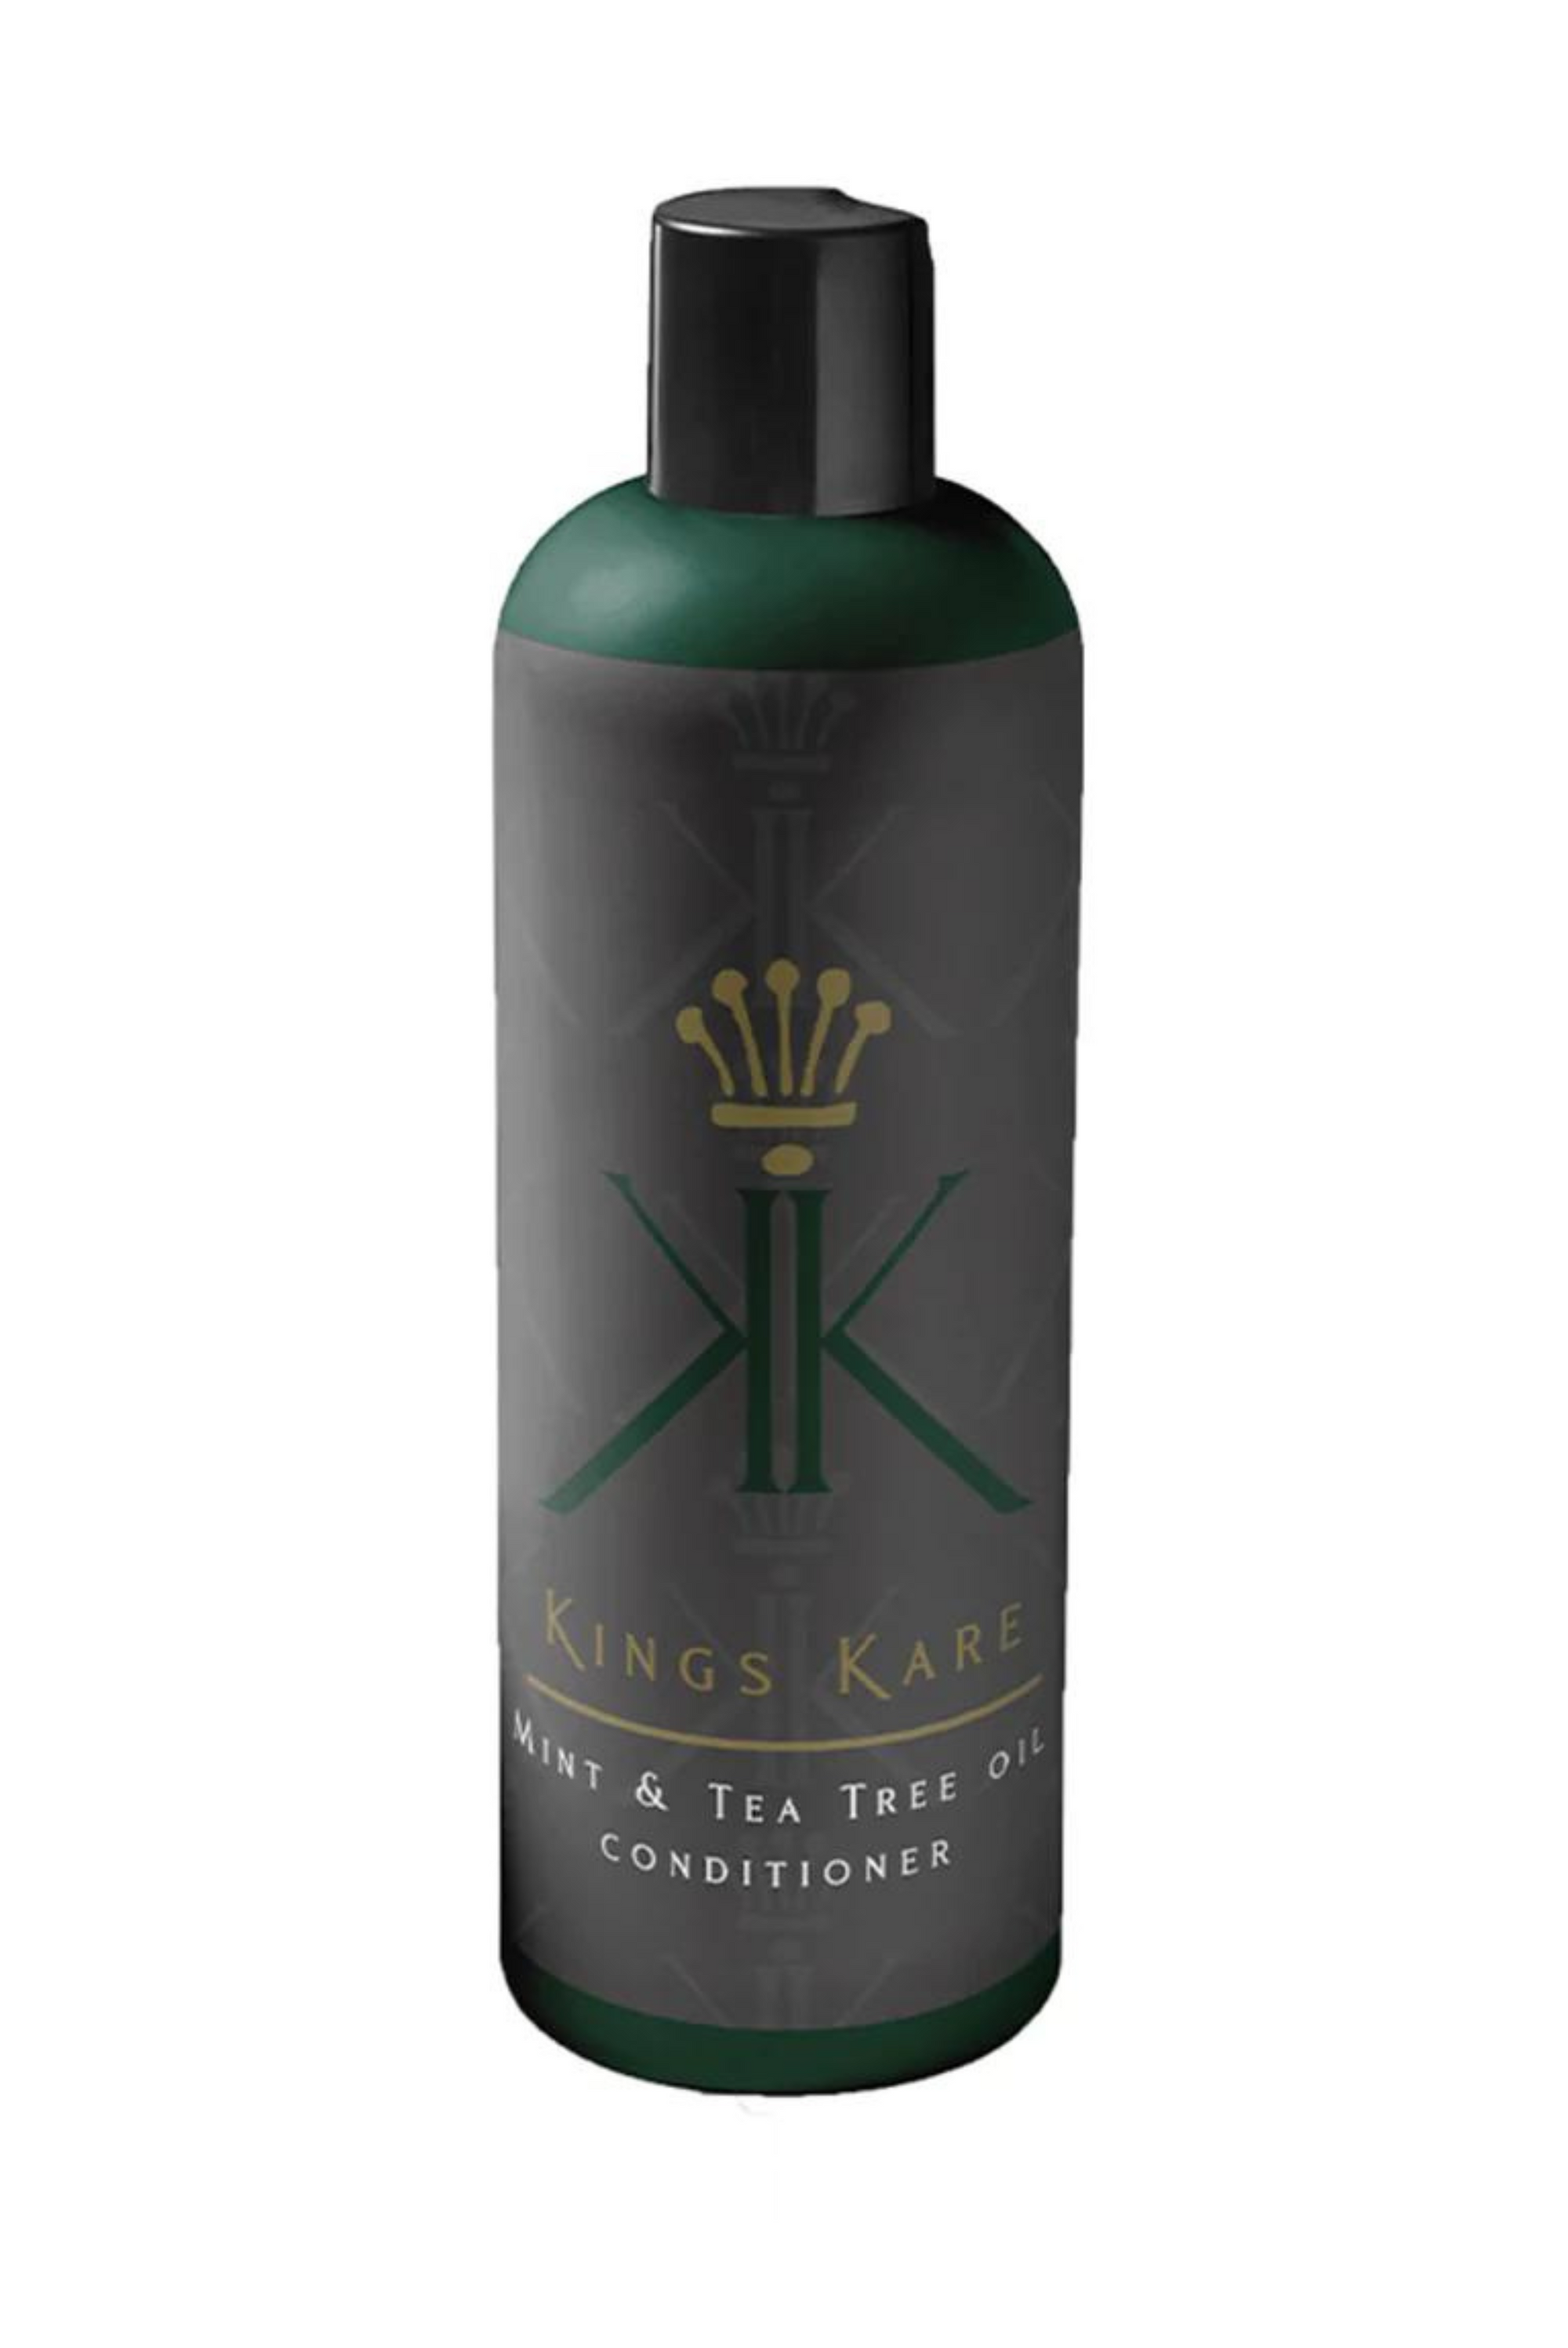 Krown Conditioner - Kings Kare shampoo for black men Shampoo for black people  Shampoo for black hair  Shampoo for black male hair  Black textured hair  Black men’s hair care